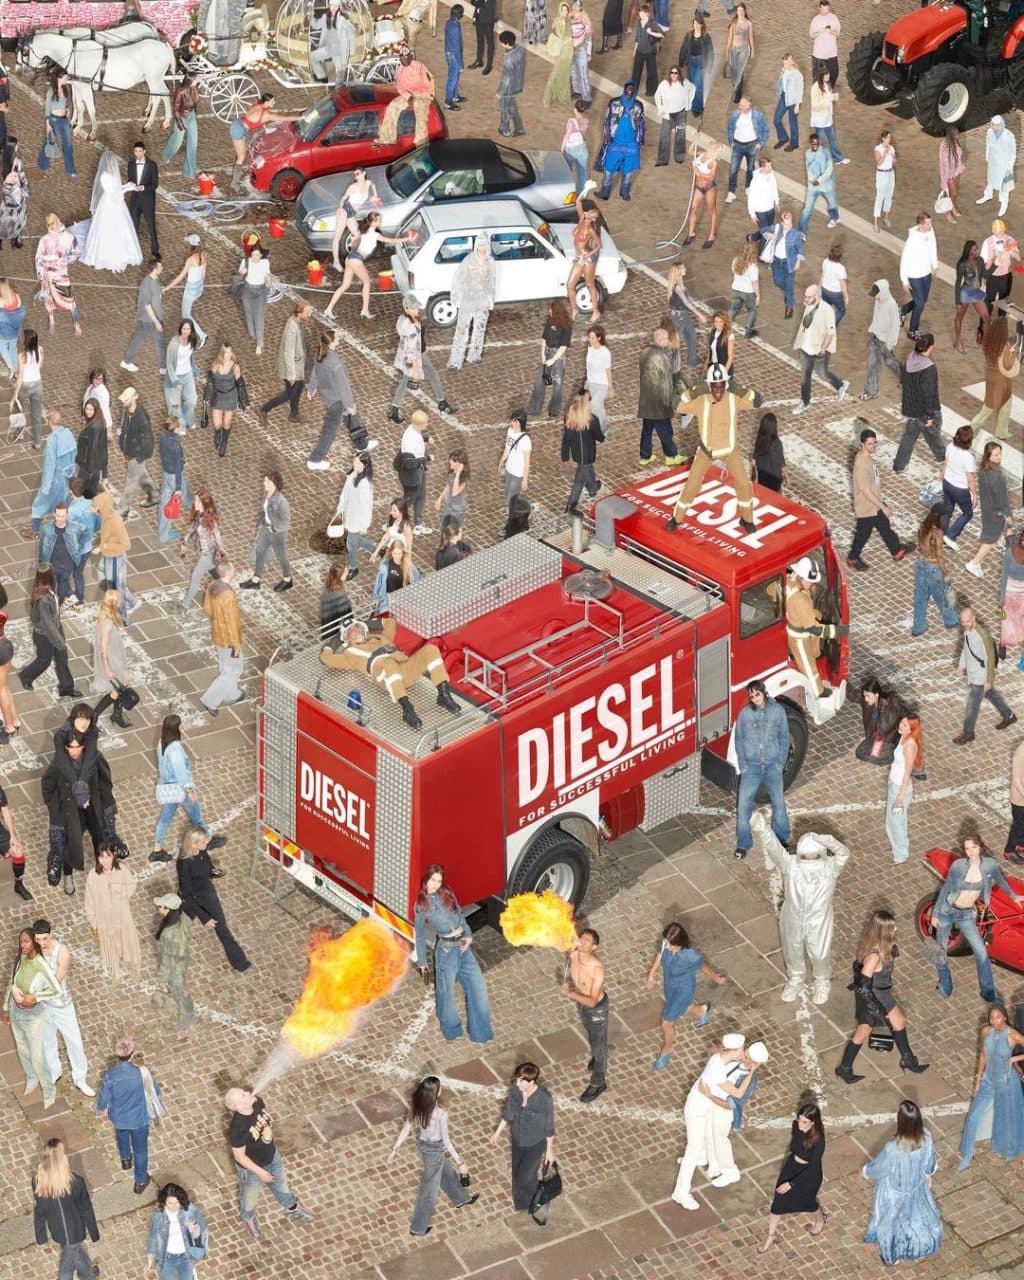 Army of Diesel